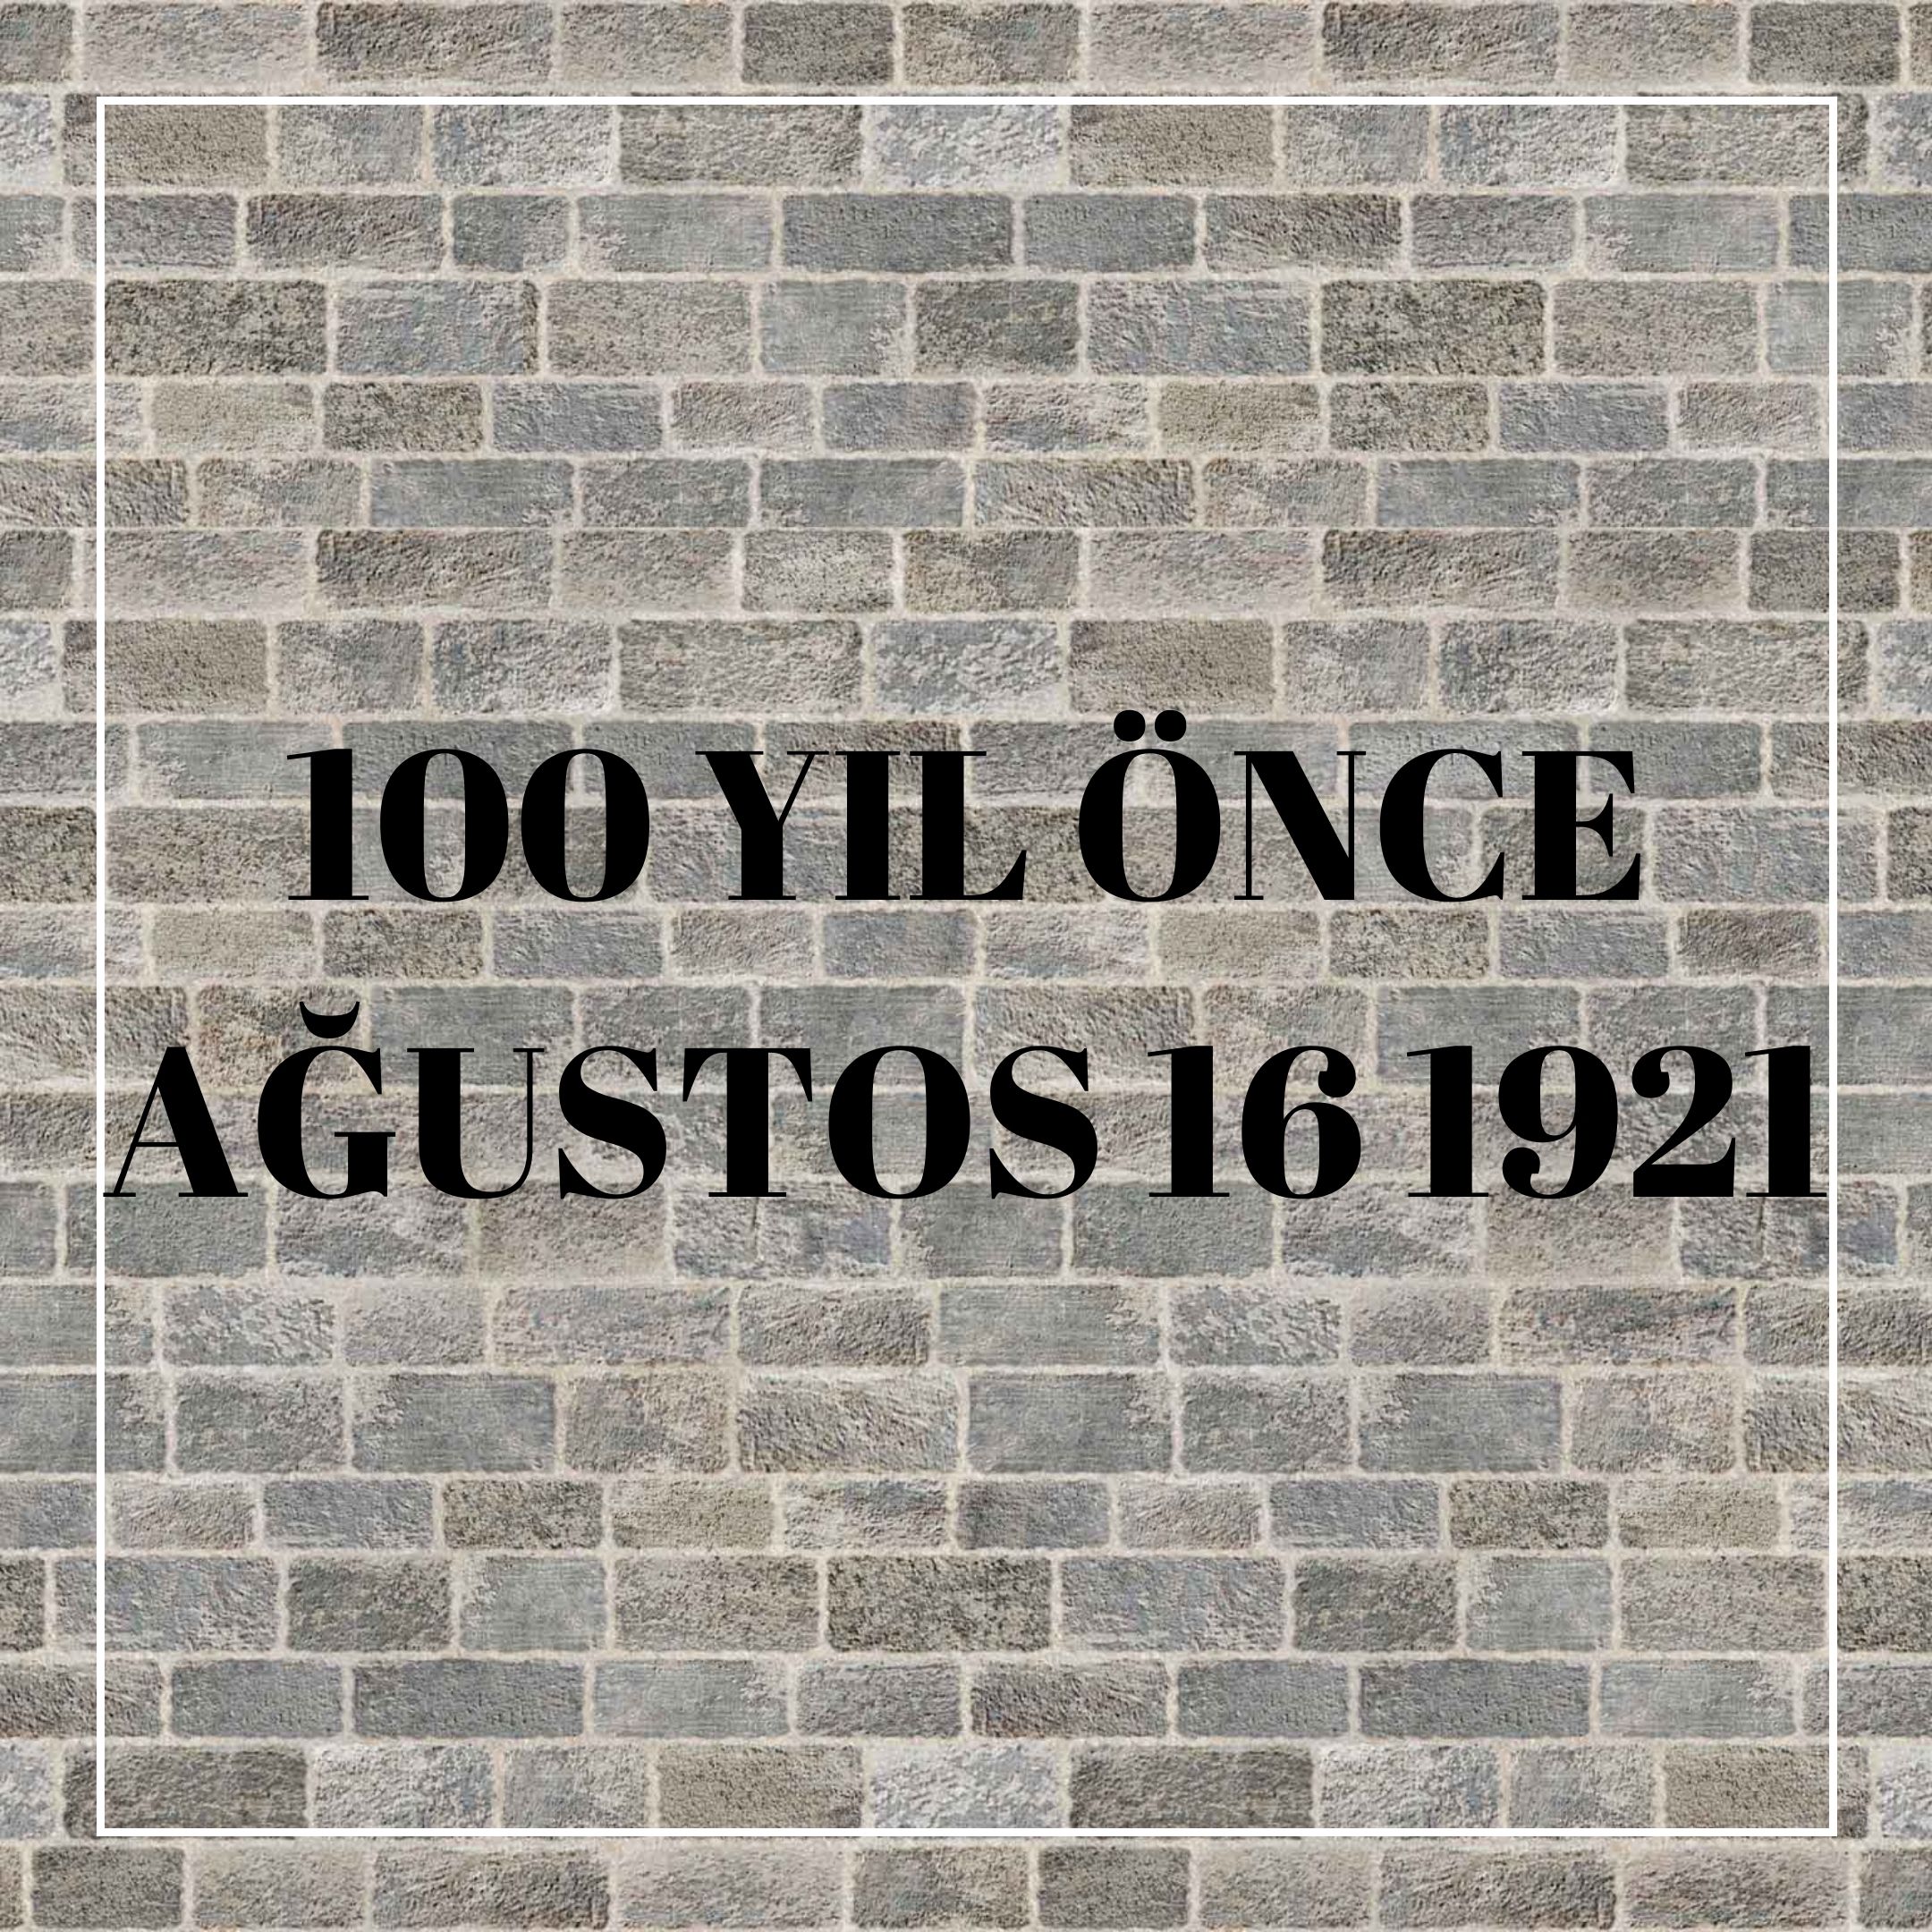 100 YIL ÖNCE AĞUSTOS 16 1921